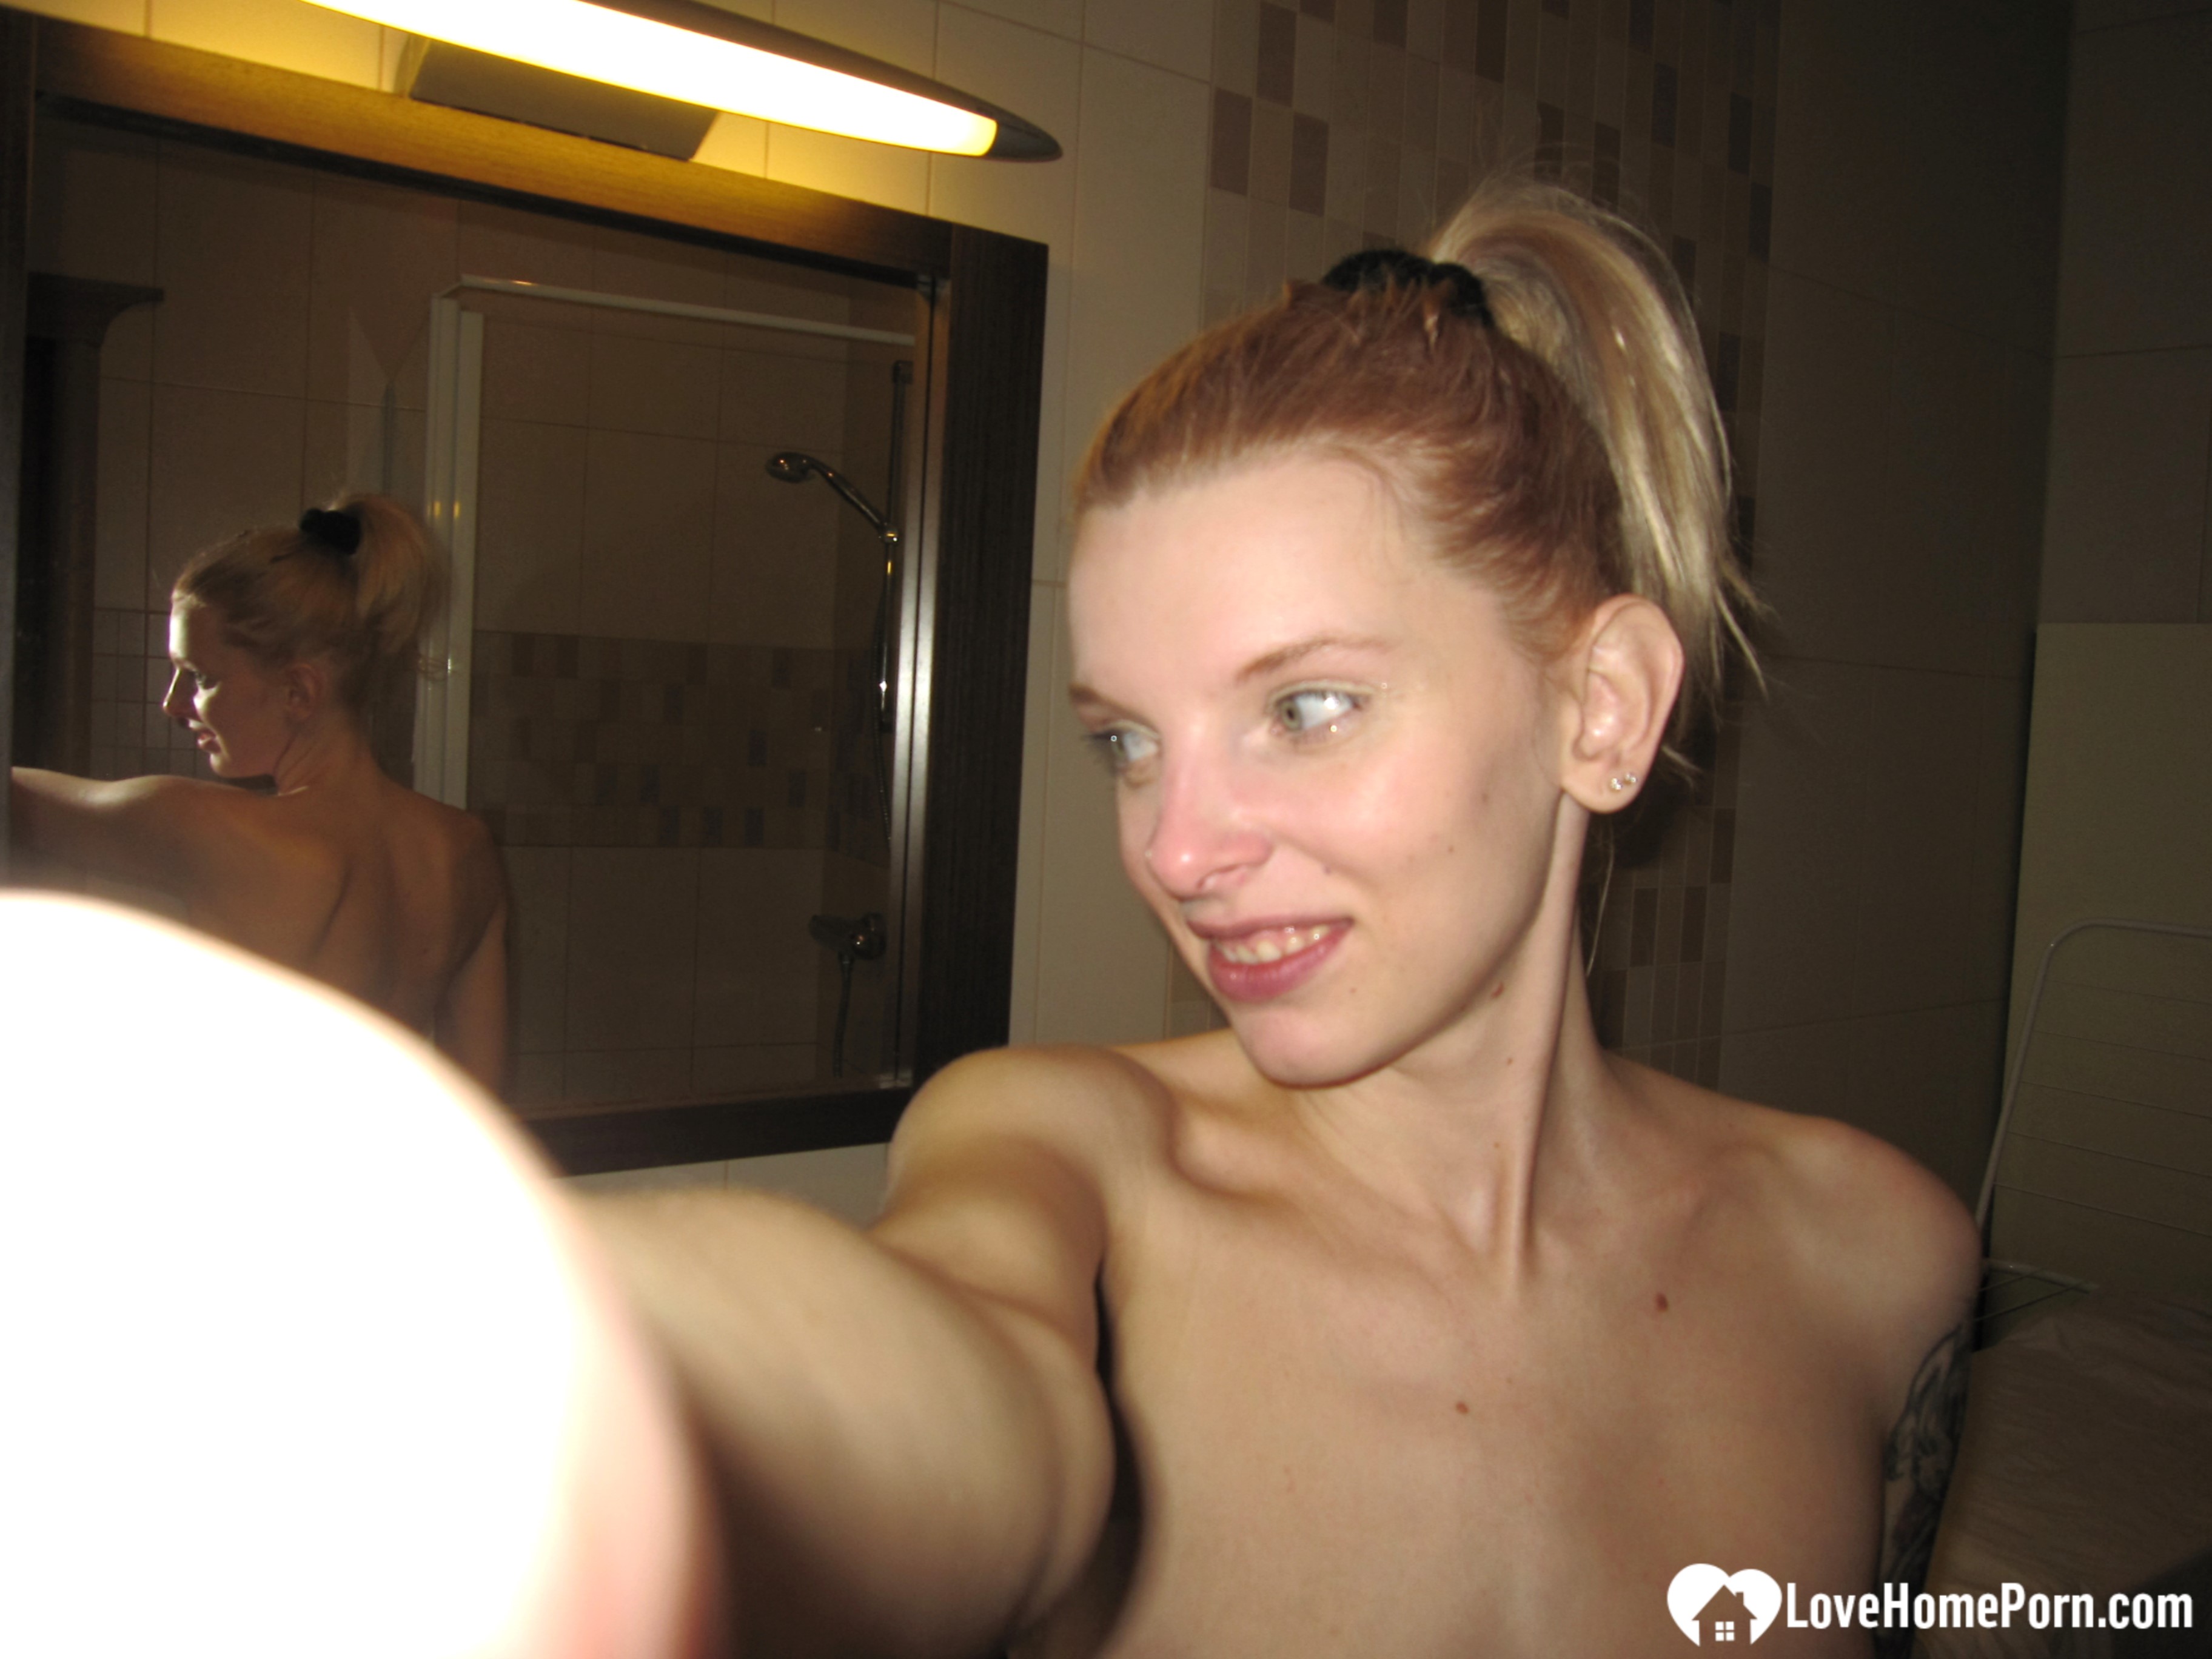 real amateur nude wife photos Xxx Photos